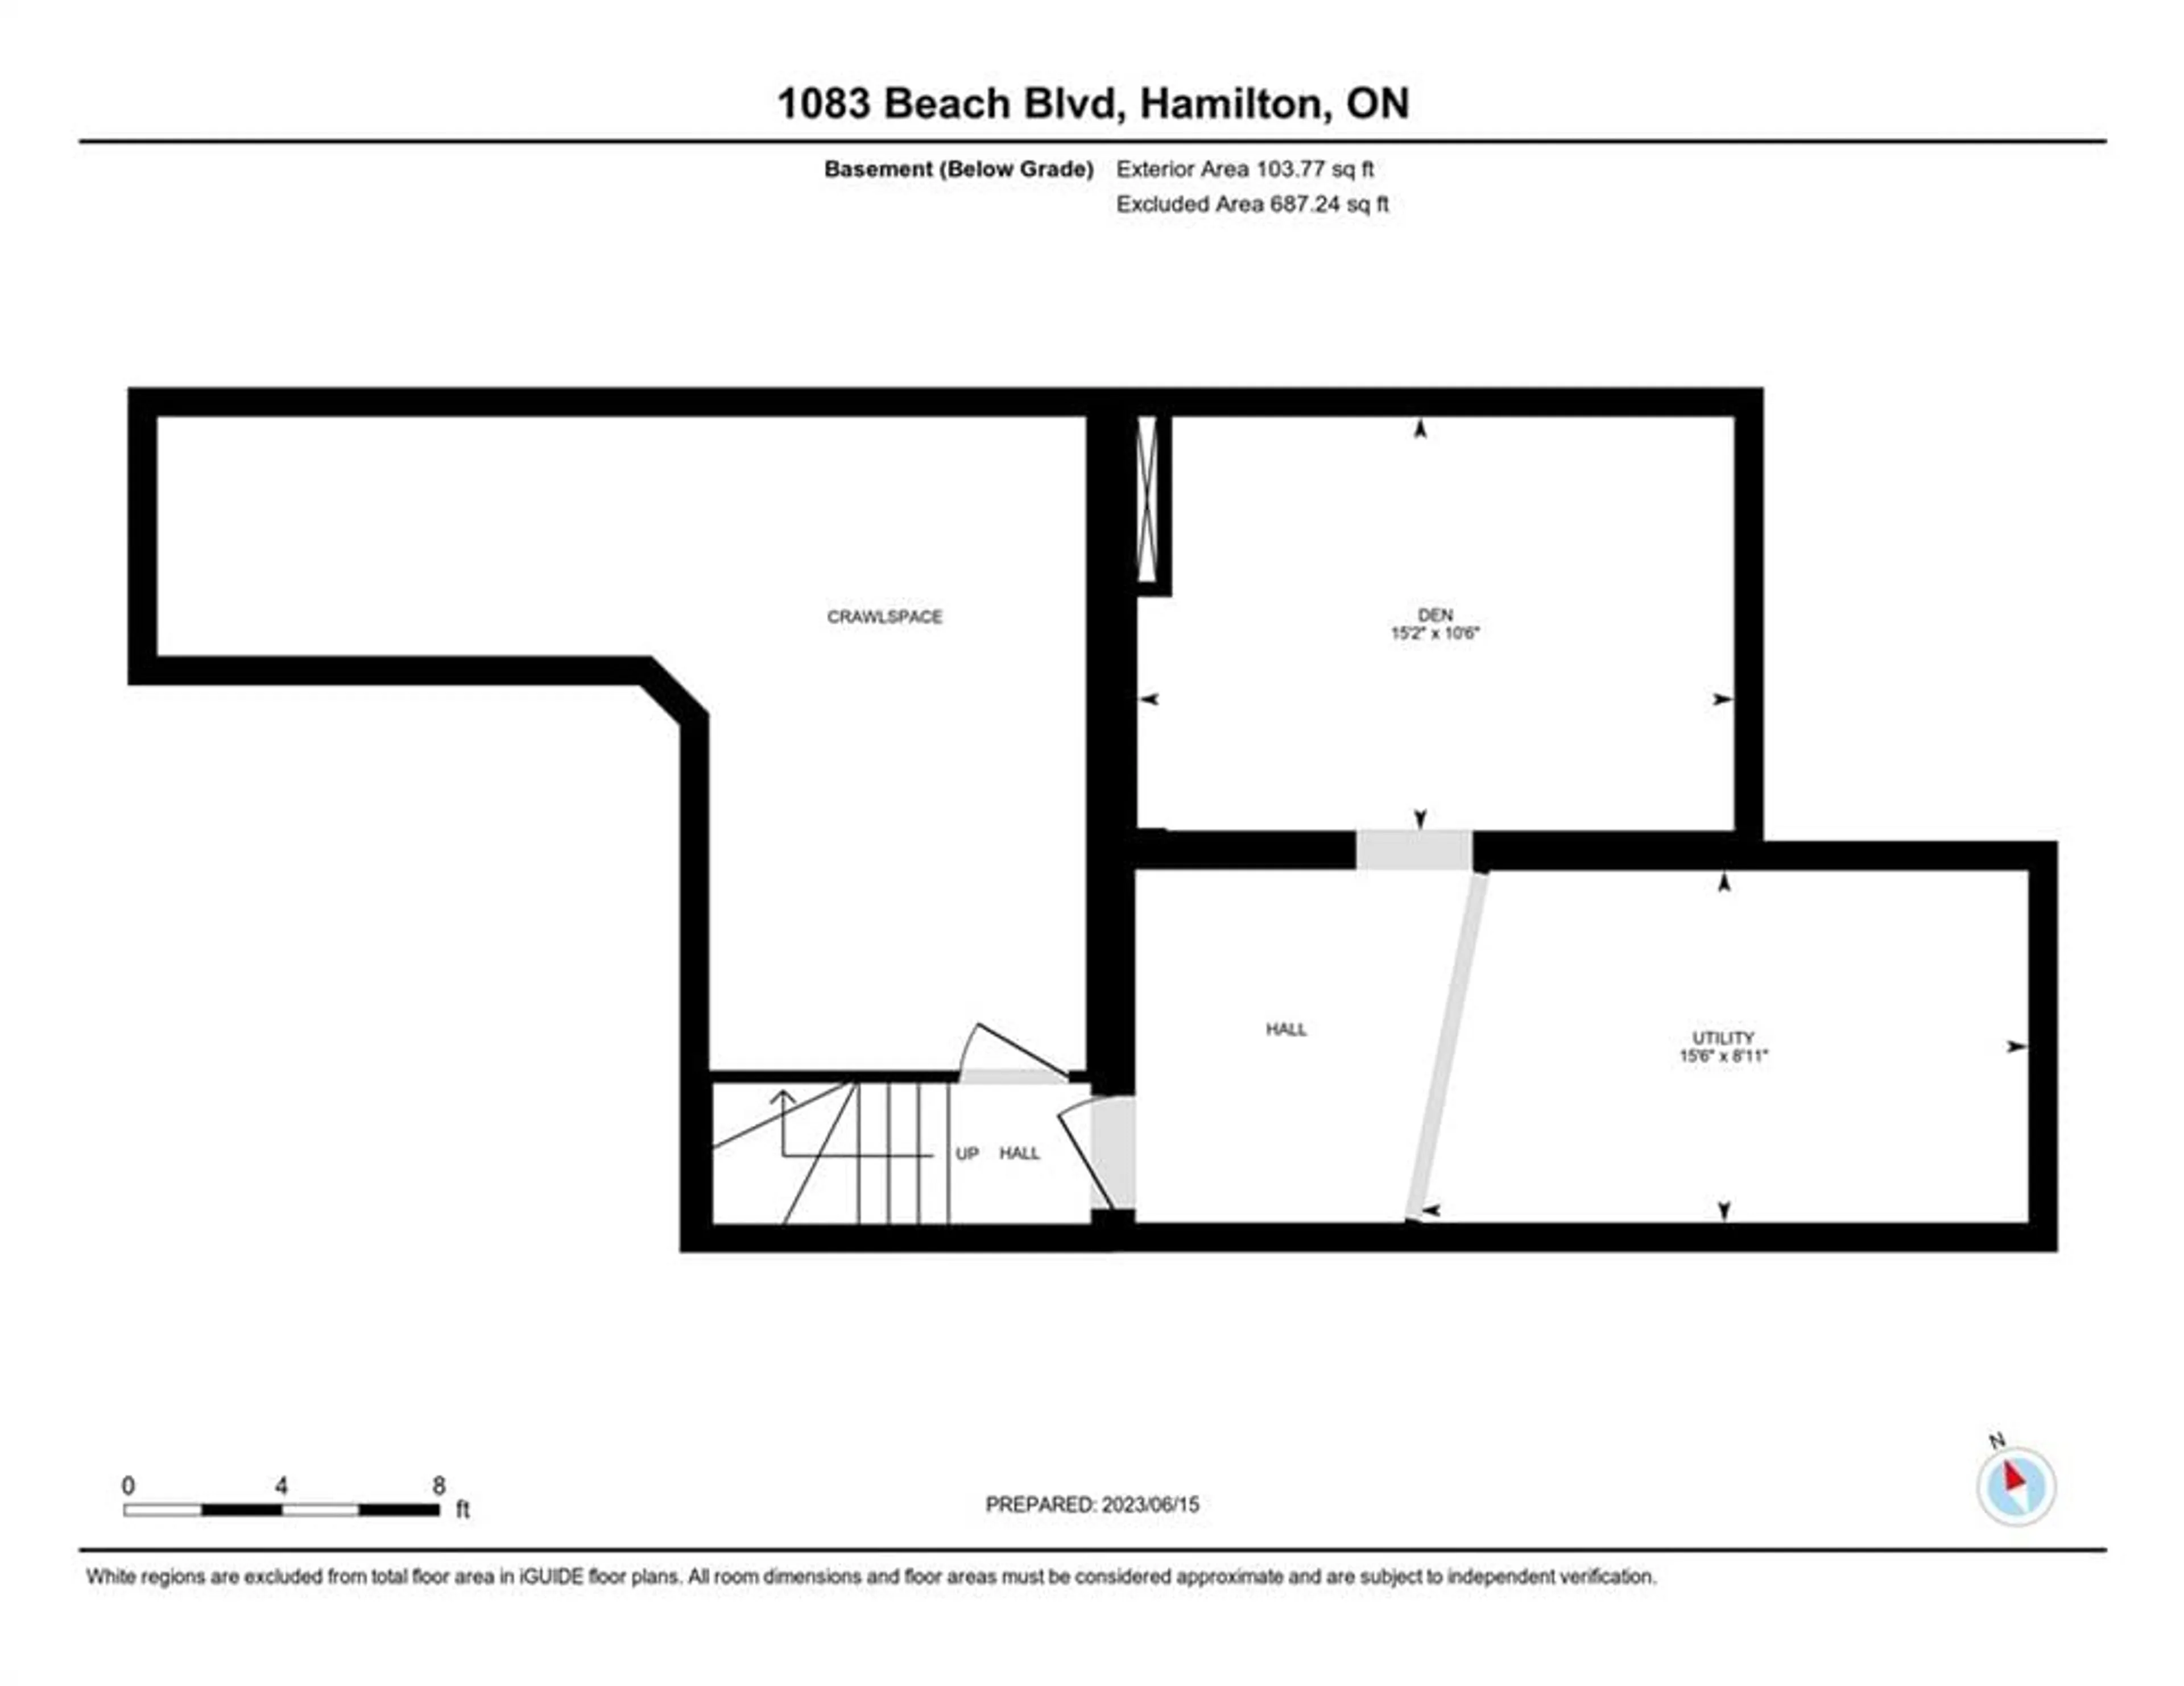 Floor plan for 1083 BEACH Blvd, Hamilton Ontario L8H 6Z9